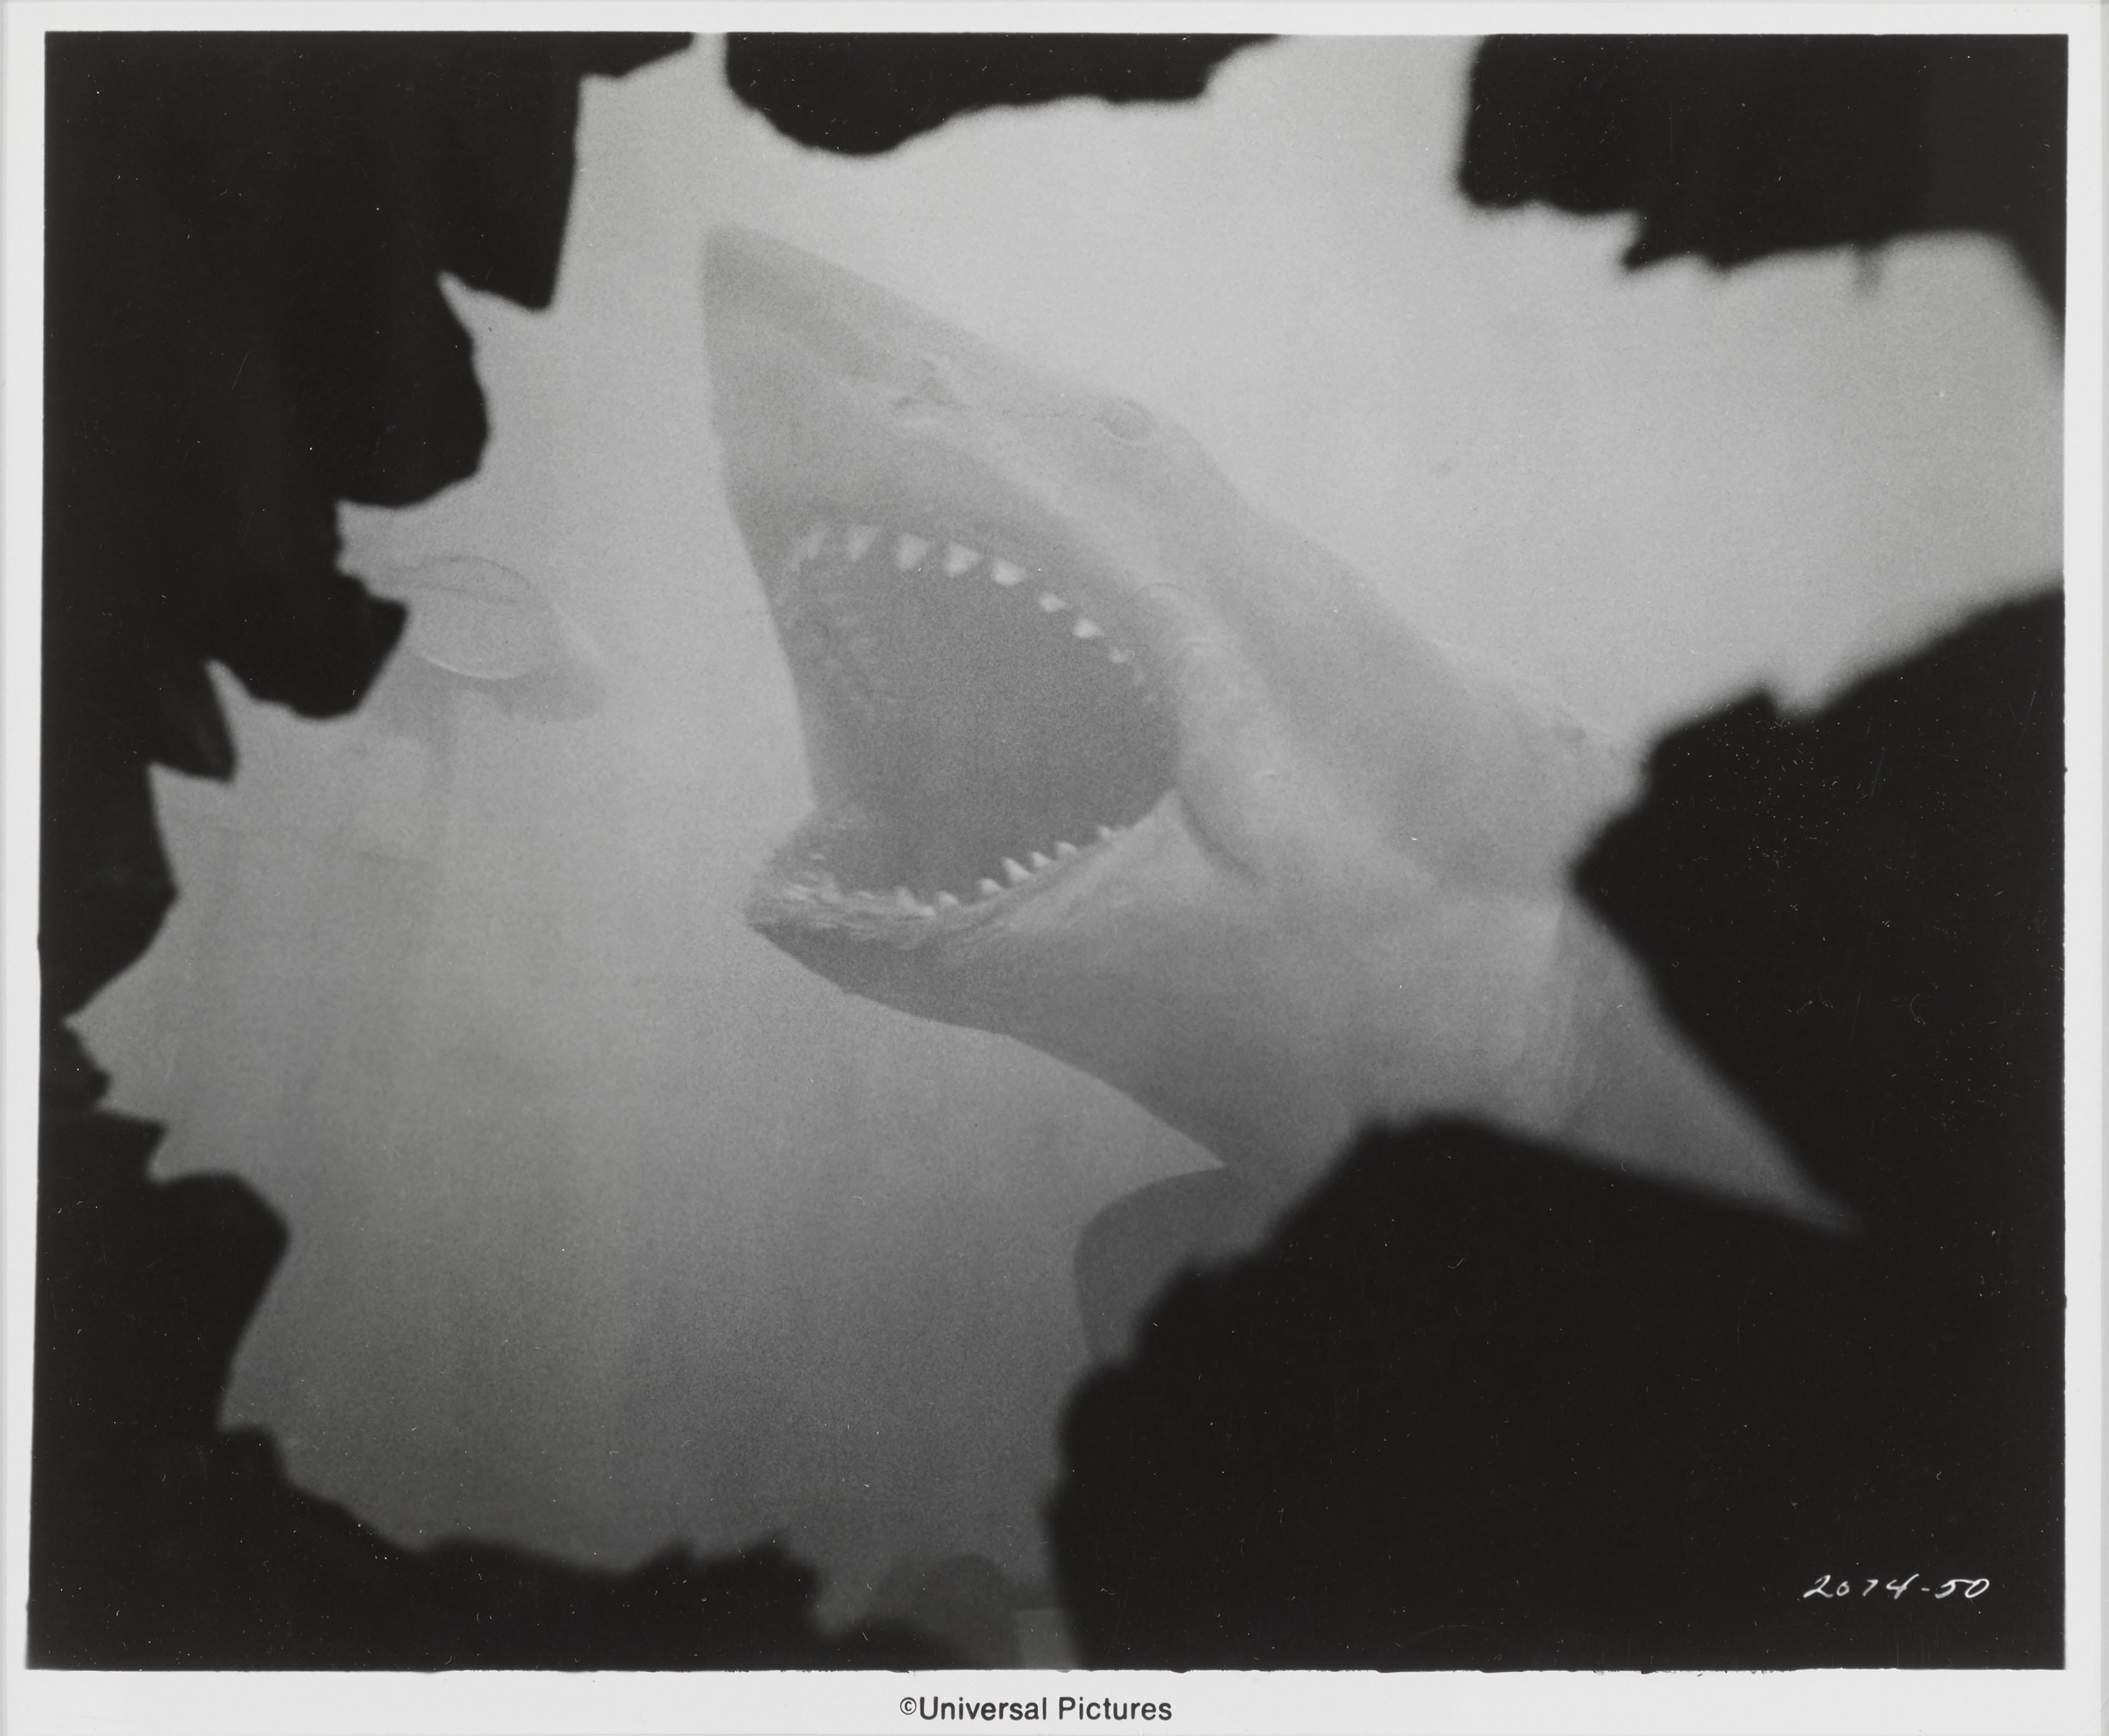 Photo originale en noir et blanc de la production américaine du film classique de 1975 Les Dents de la mer.
Cette photo a été envoyée aux journaux pour annoncer la réédition.
Le film a été réalisé par Steven Spielberg, avec Roy Scheider, Richard